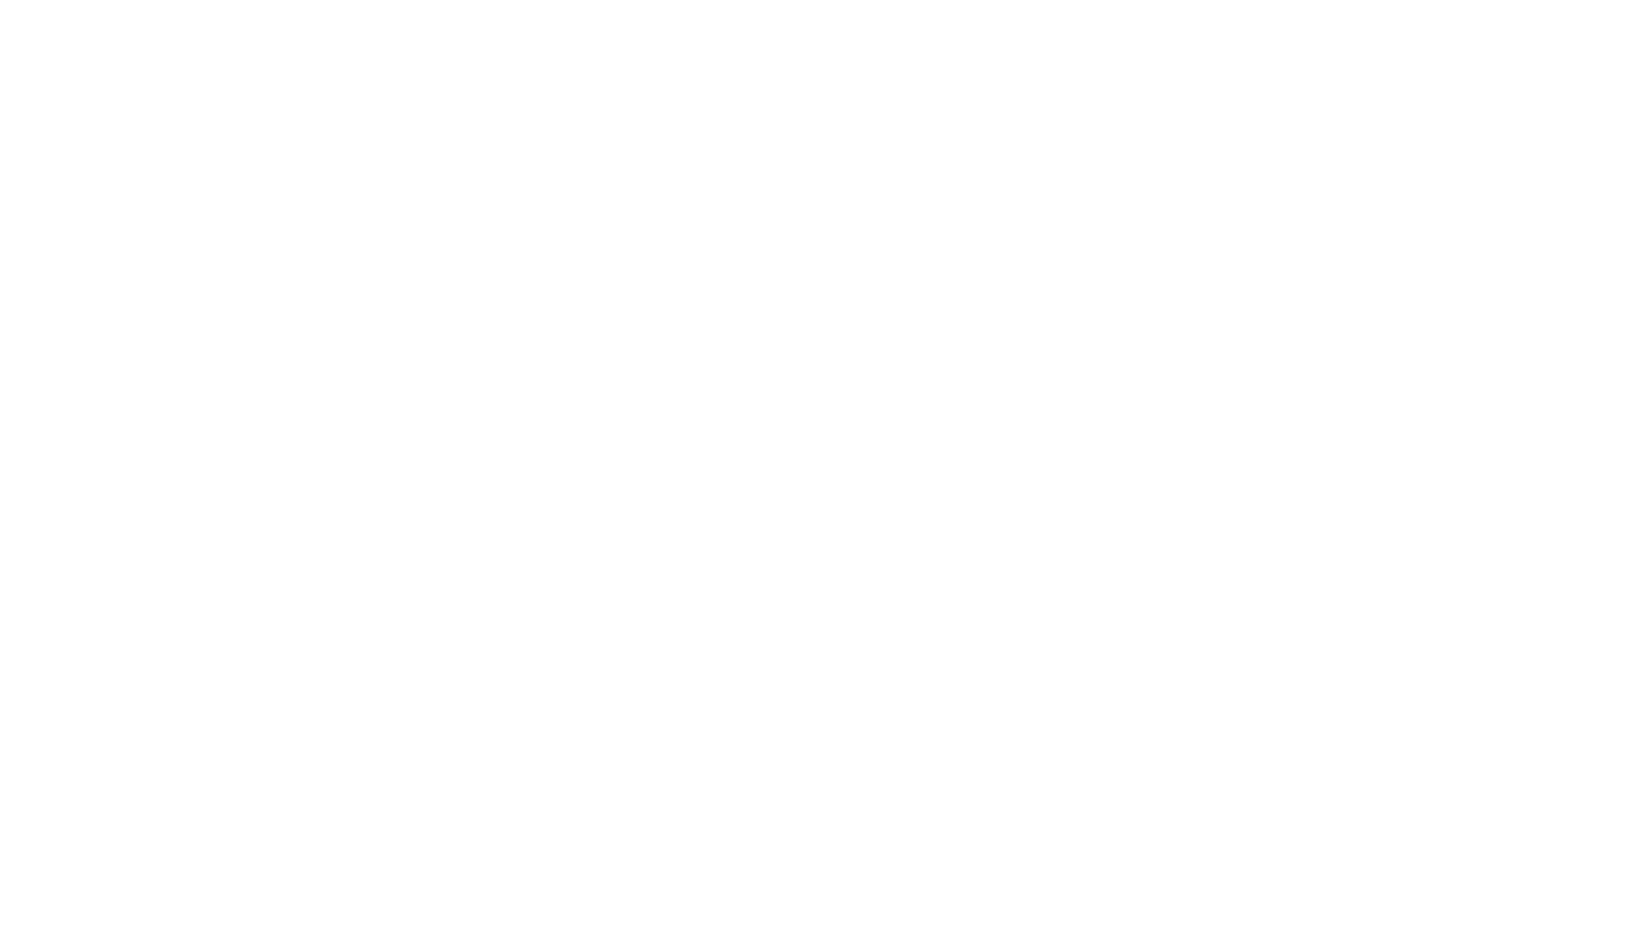 Logo Achieve Miami